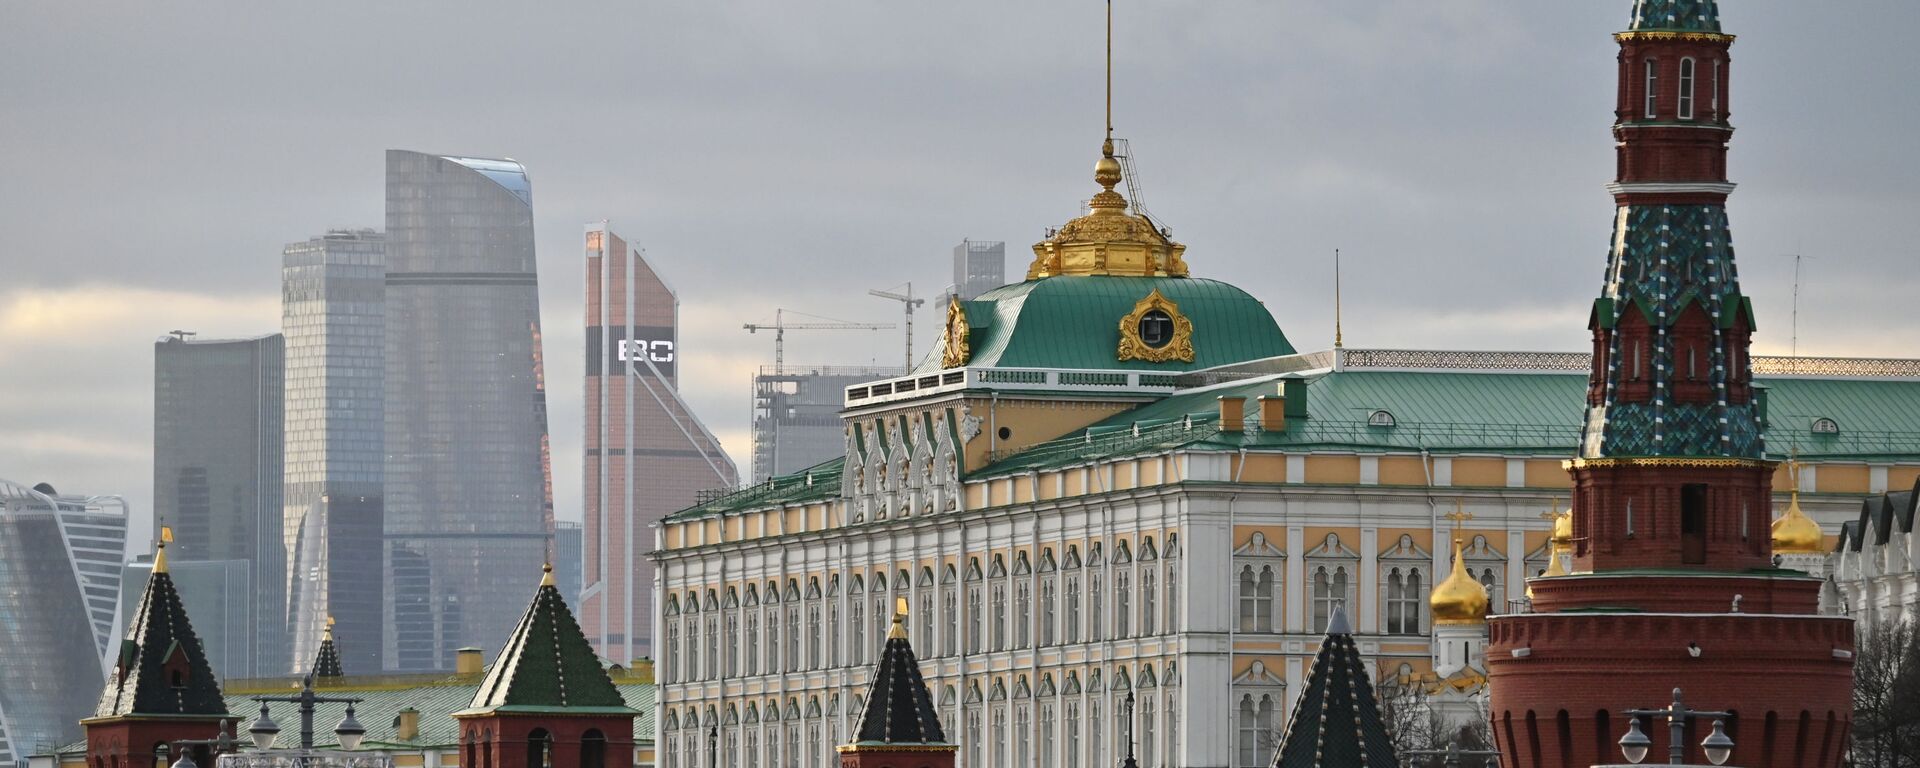 Московский Кремль и небоскребы делового центра Москва-сити, архивное фото - Sputnik Латвия, 1920, 17.11.2021